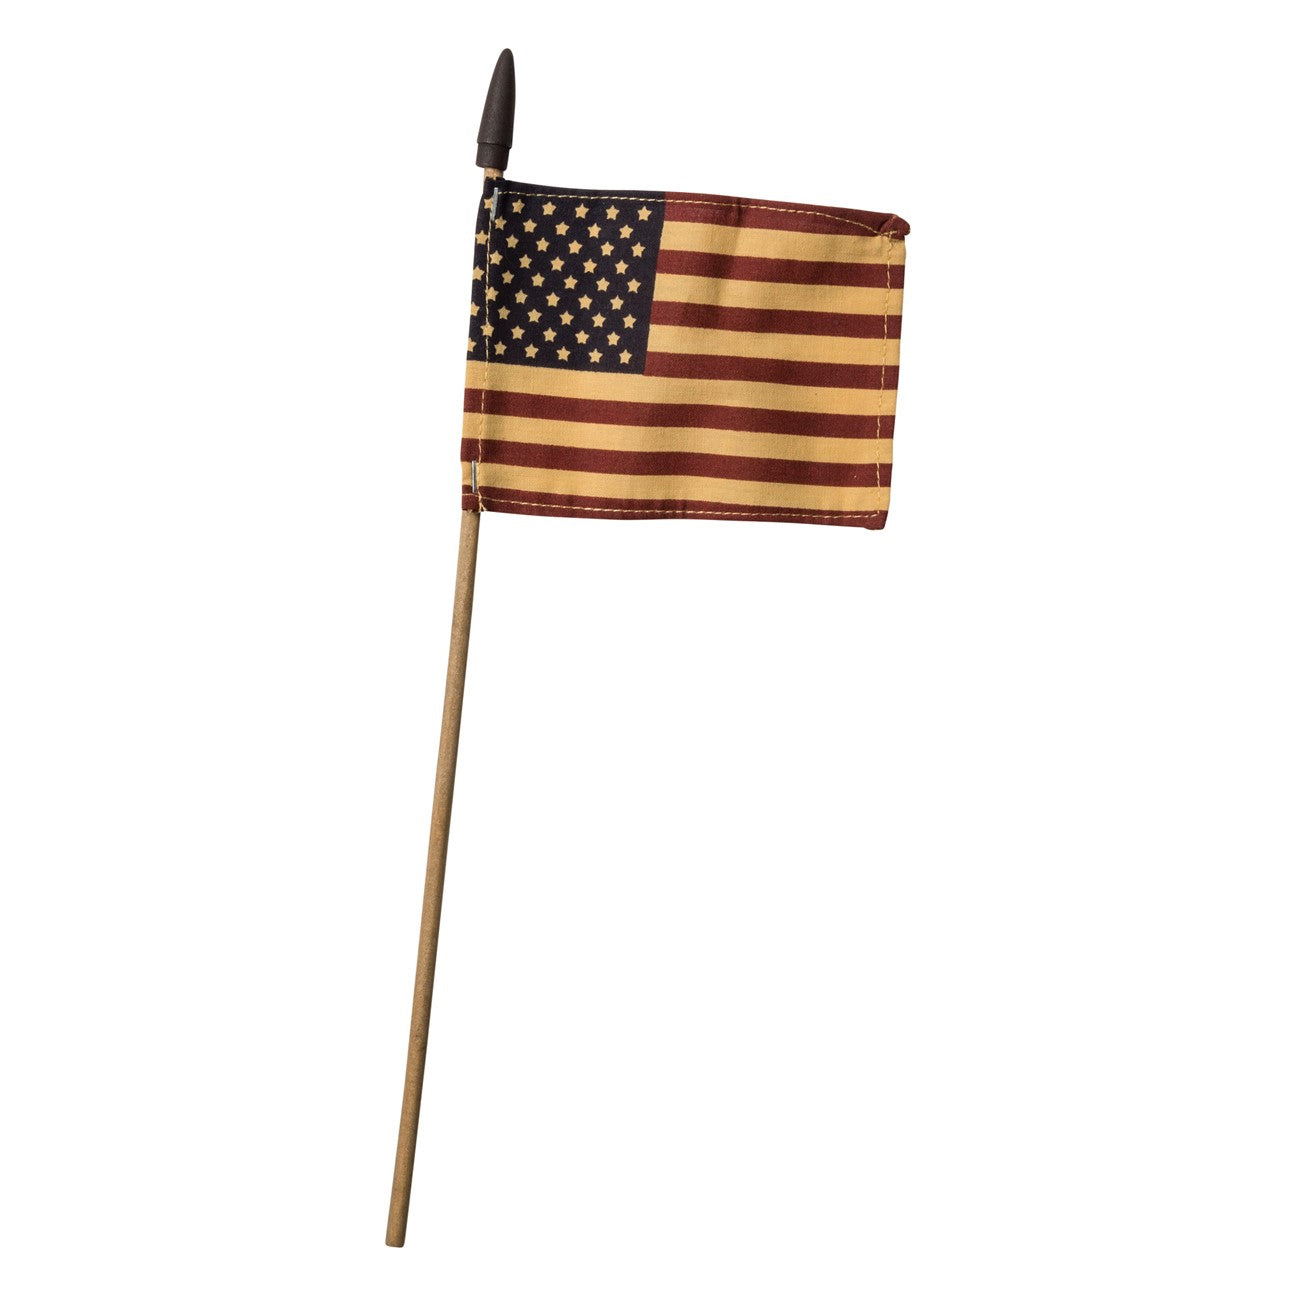 Primitive American Flag - Small